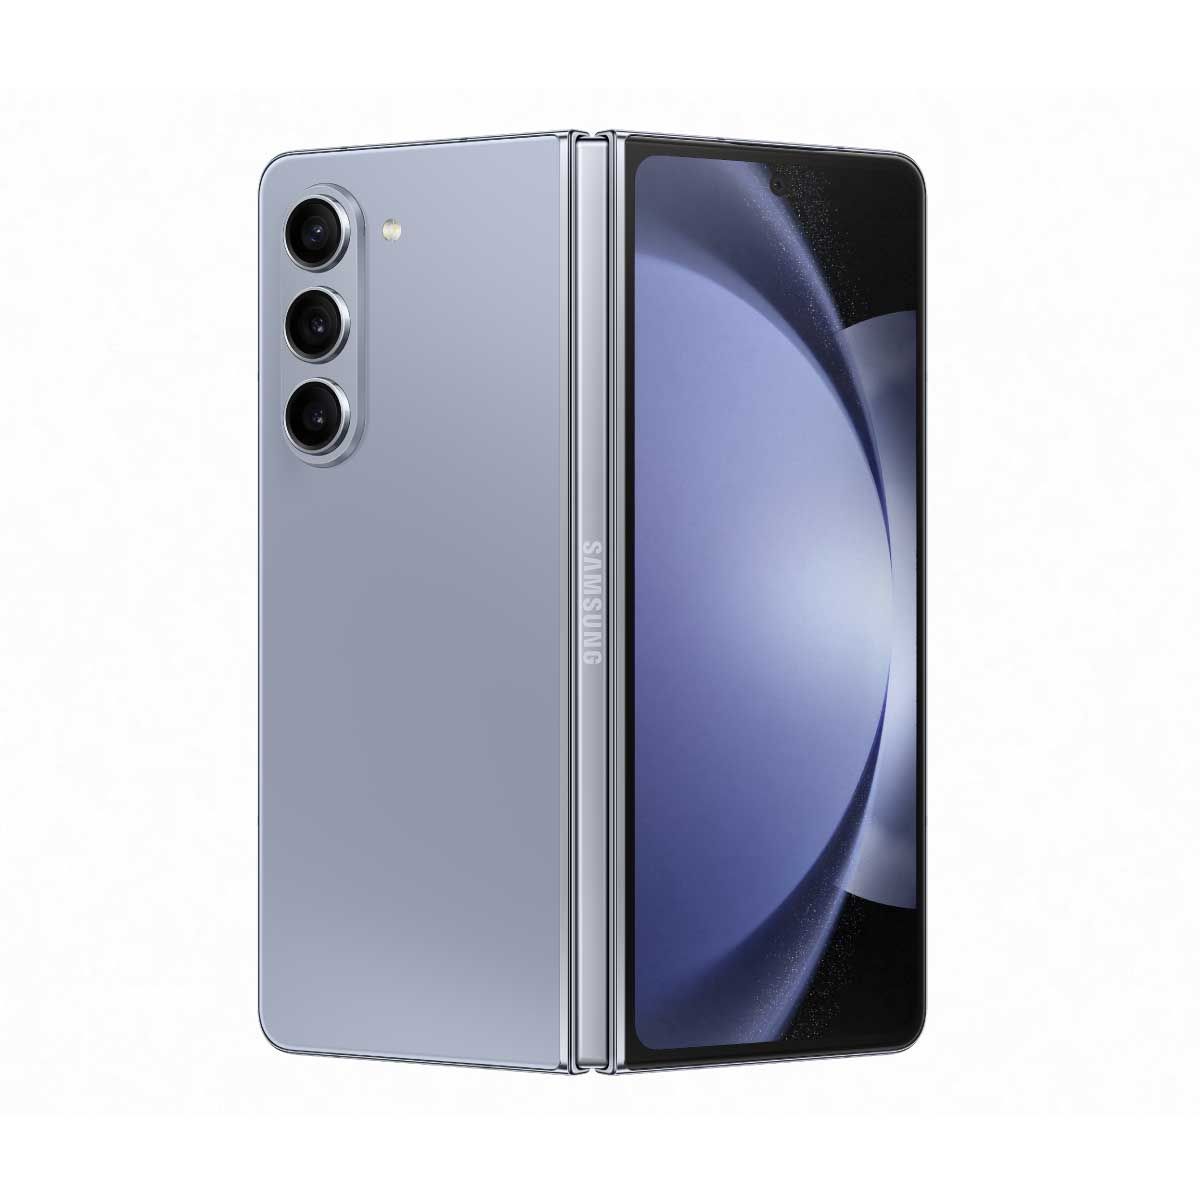 Samsung Galaxy Z Fold5 RAM 12 GB / ROM 256 GB) ICY BLUE